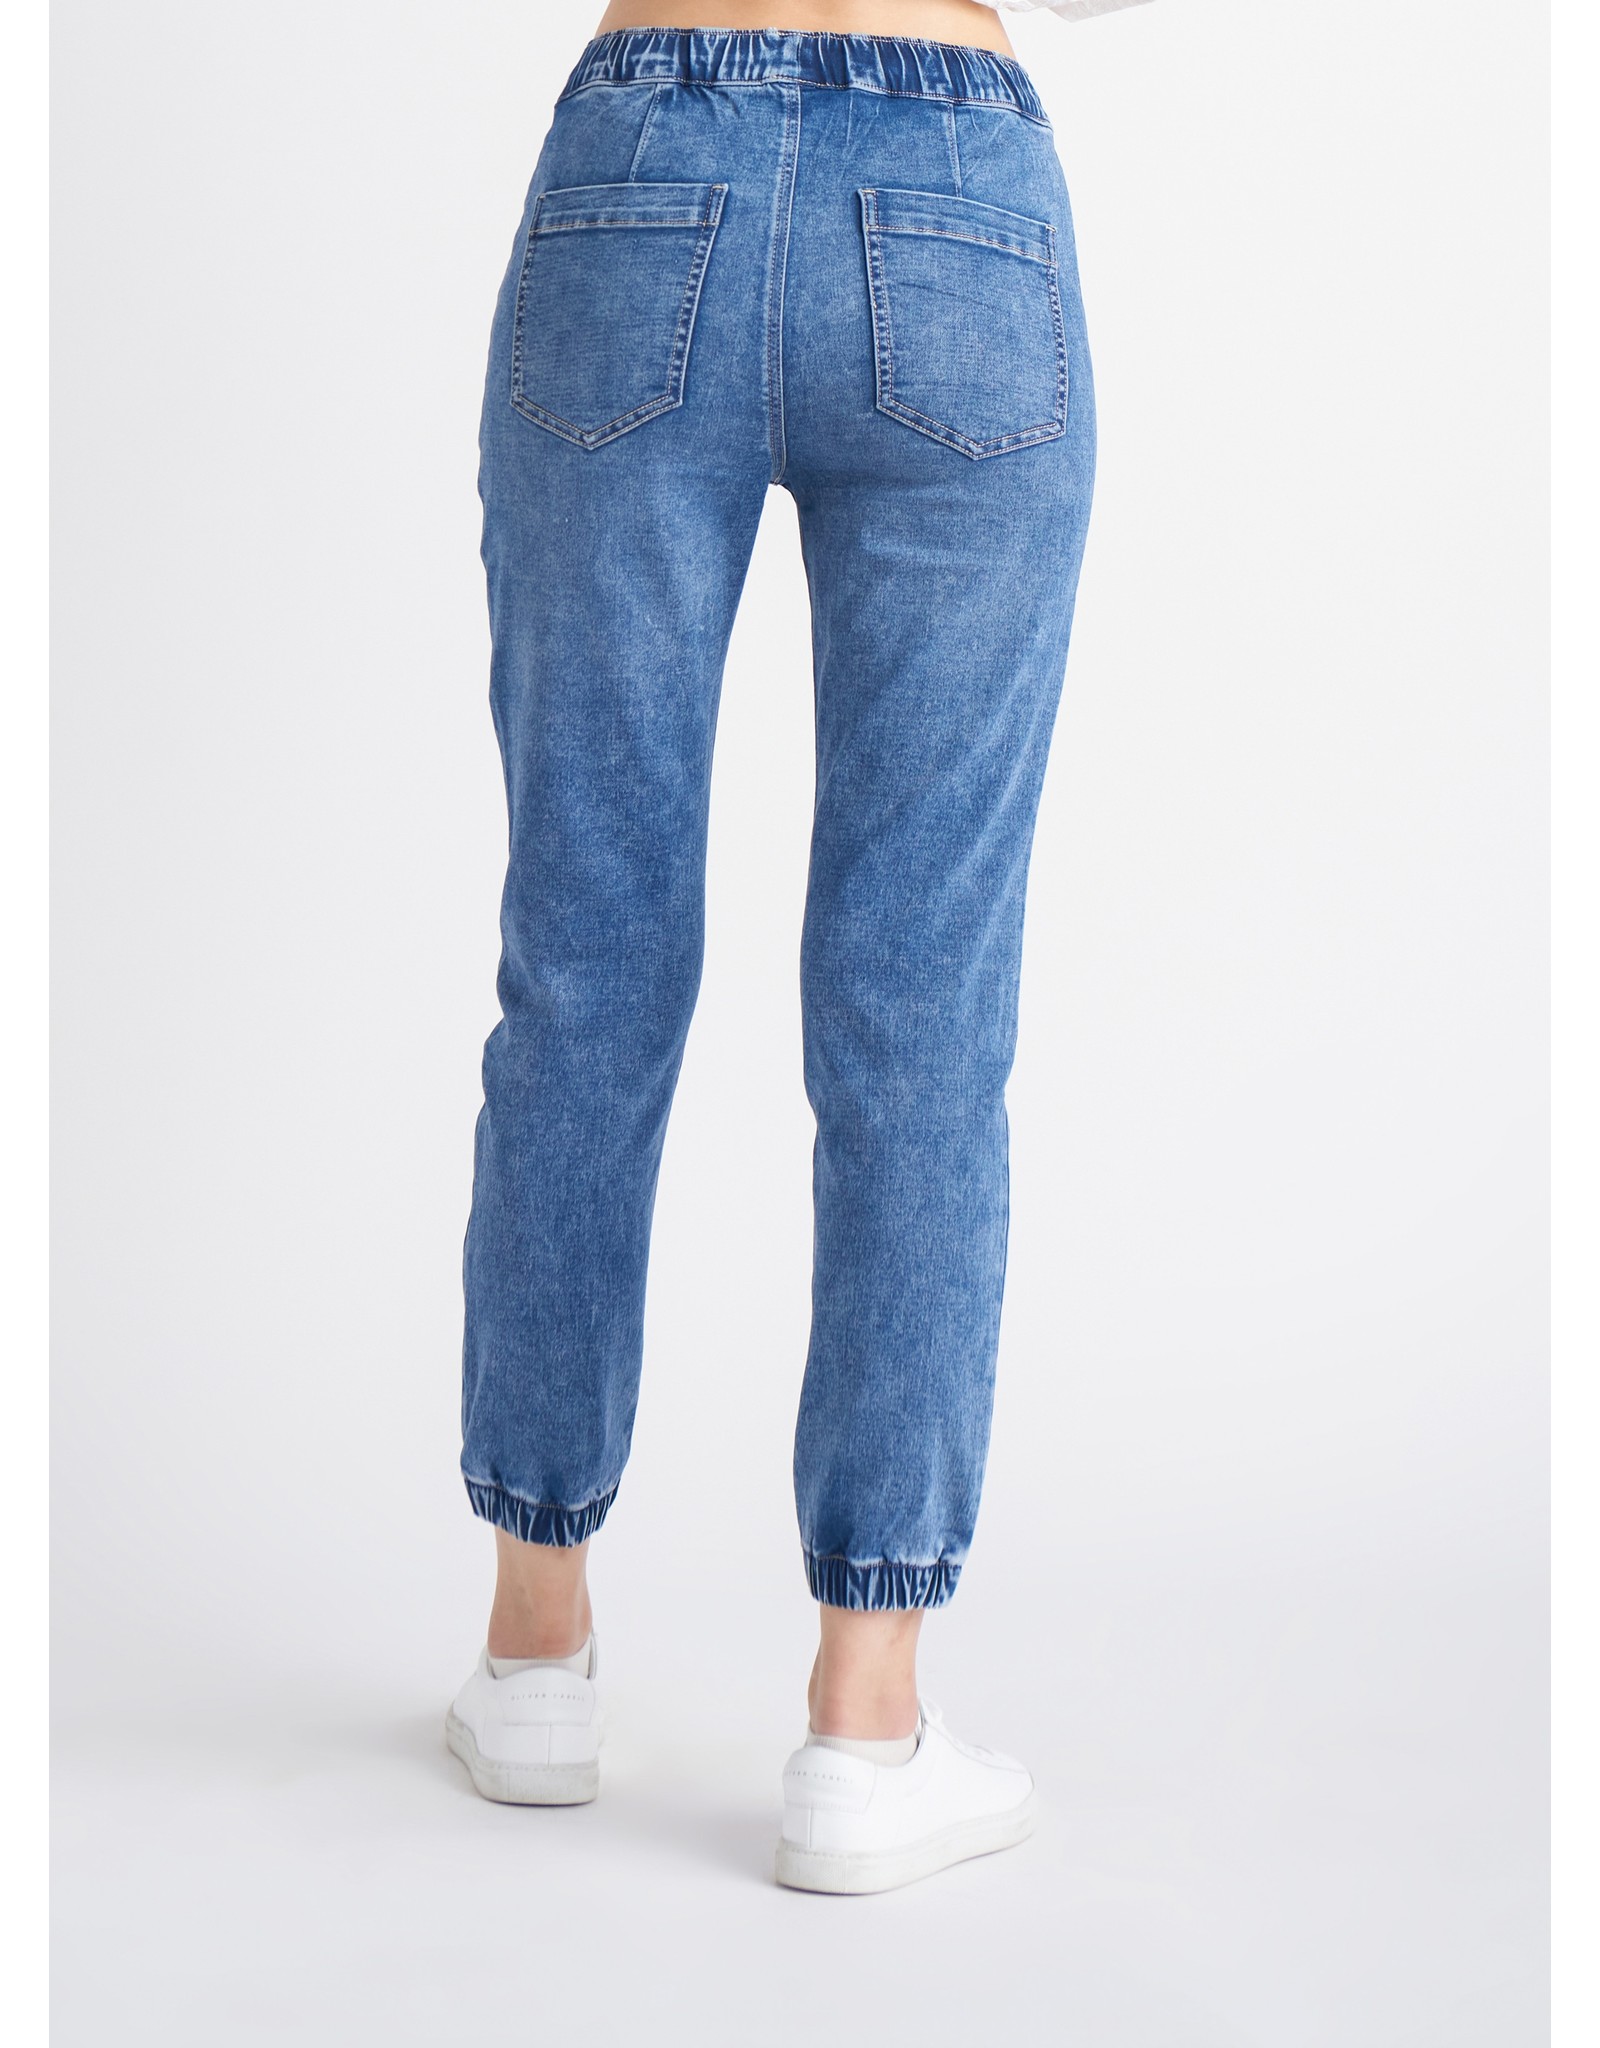 Dex Pantalon Jogger, Jean Taille Haute, Bleu Vintage